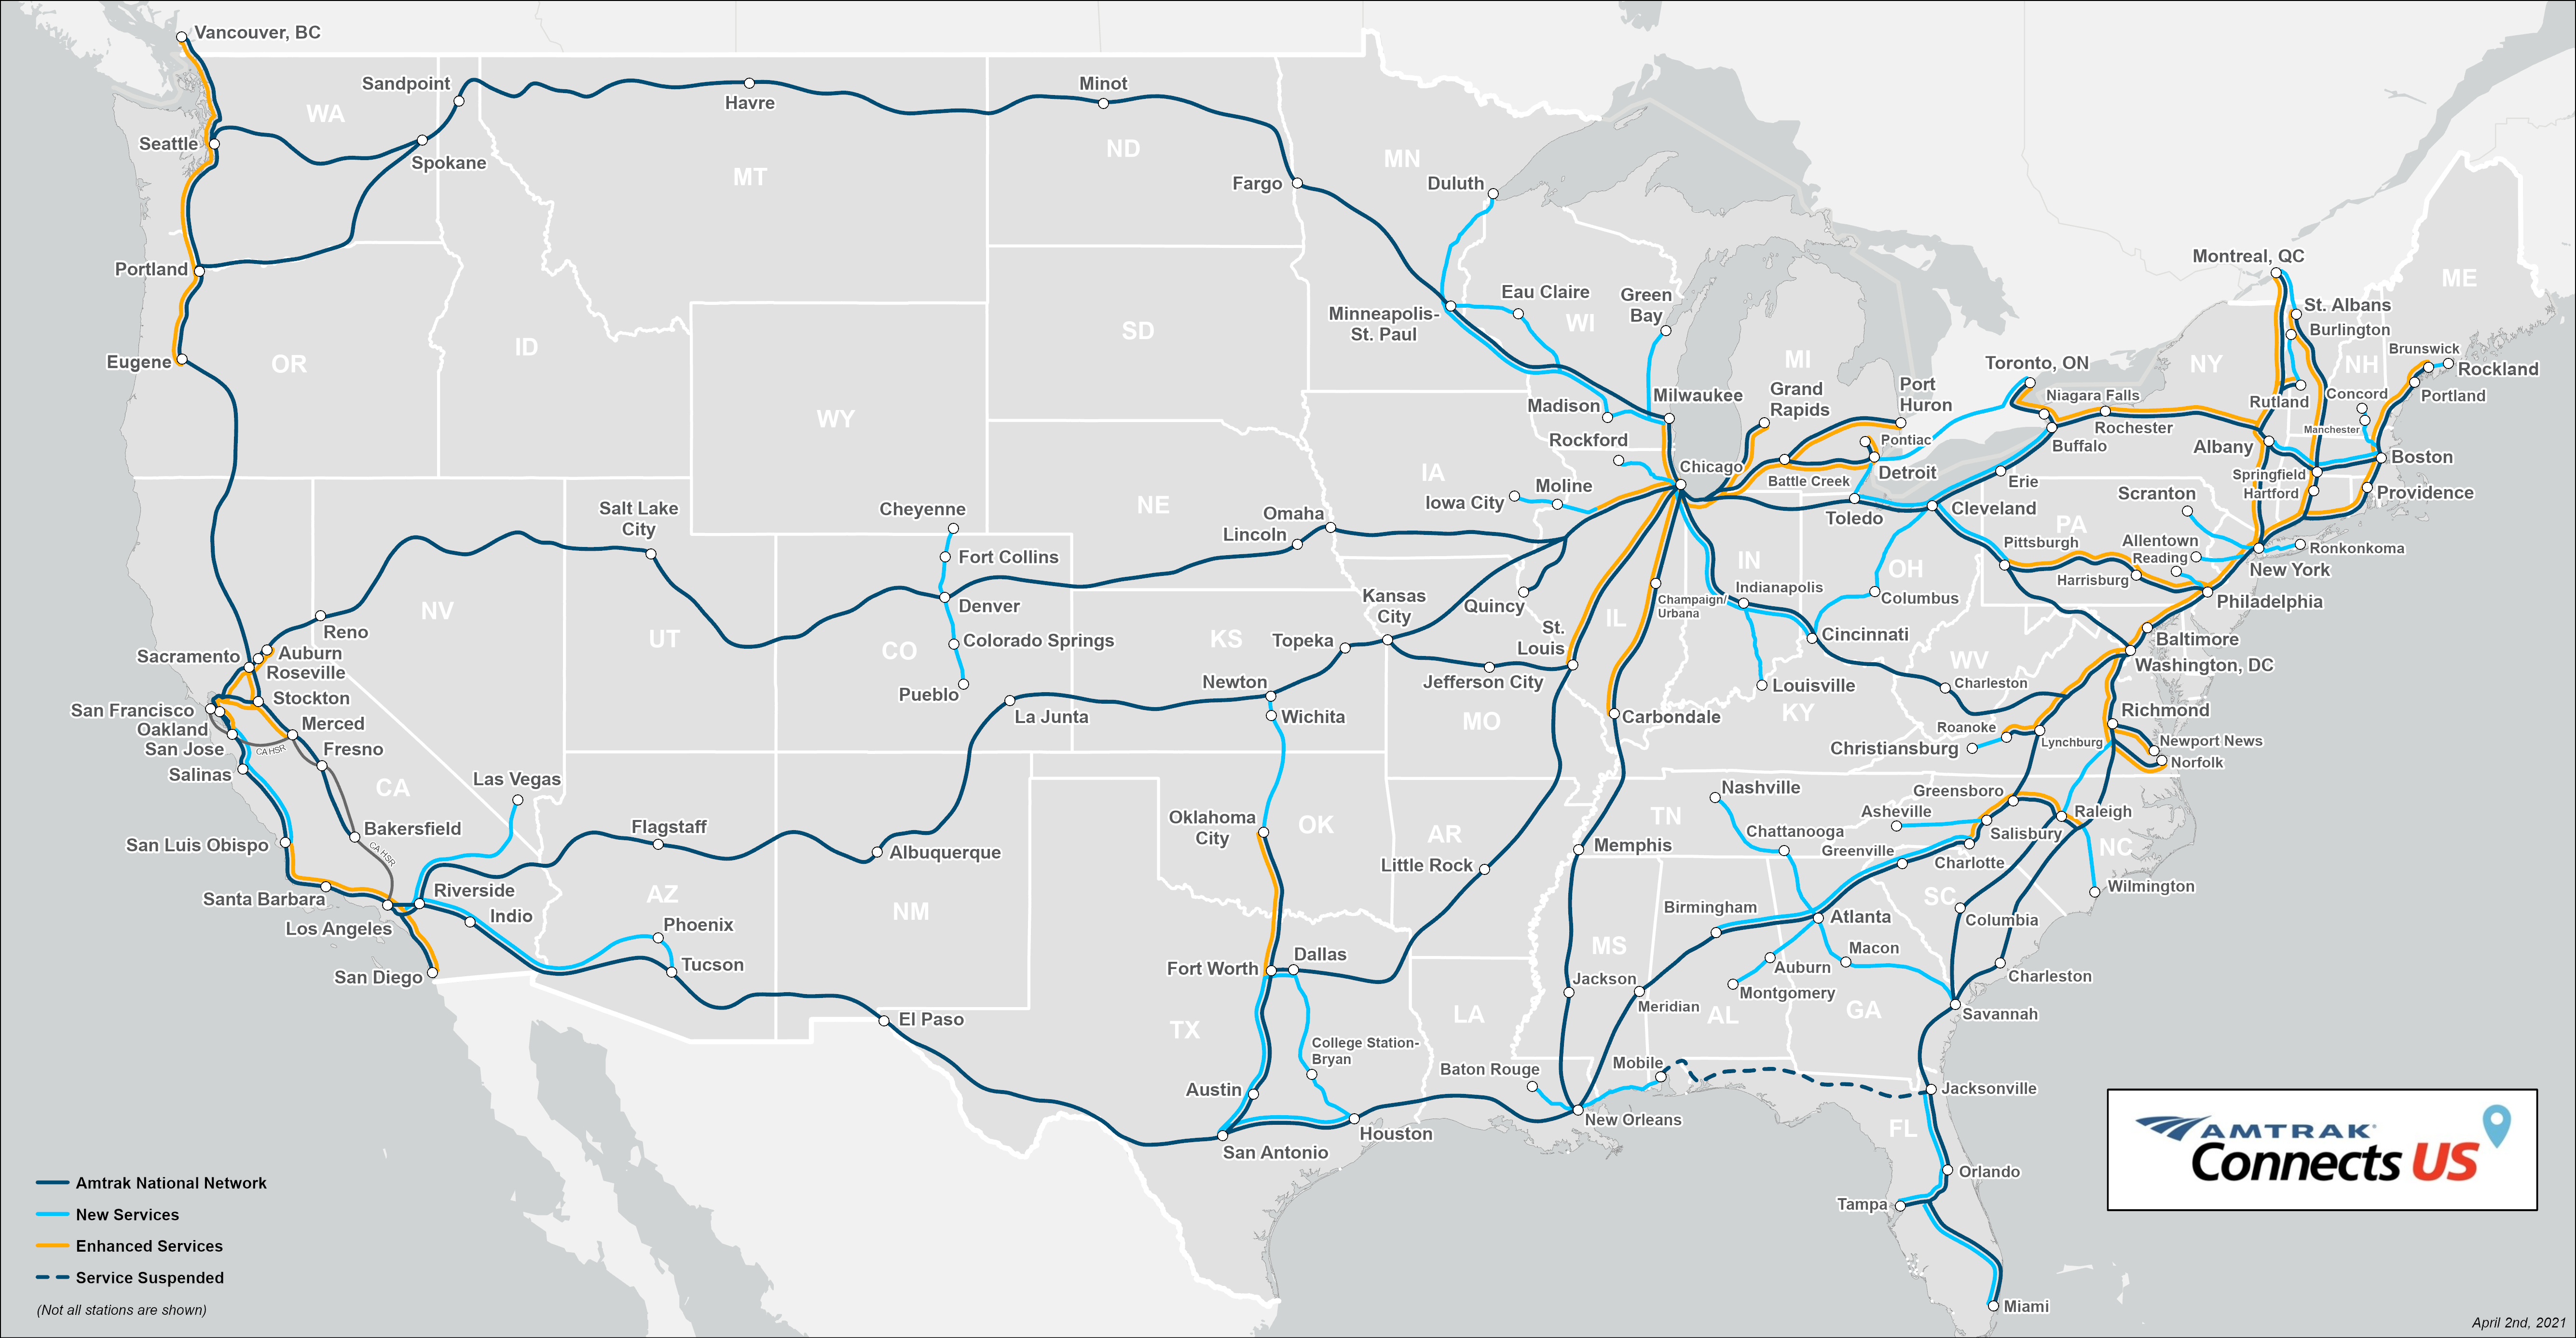 Az Amktrak komoly hálózatbővítést tervez 2035-ig, melyhez nagy segítséget ad a most megszavazott, jelentős állami támogatás (kép forrása: Amtrak)